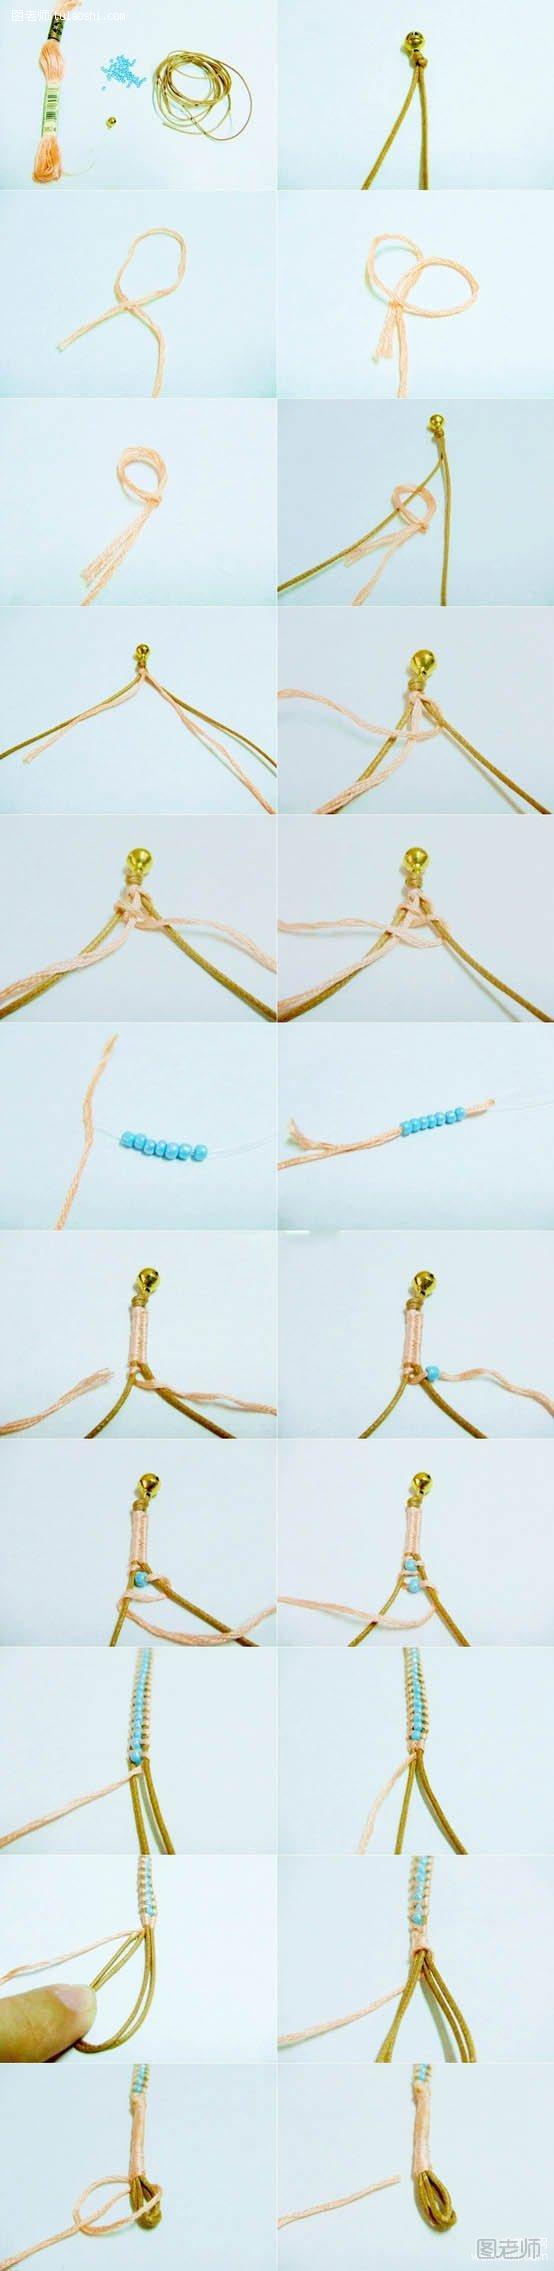 8字绕线串珠皮绳手链搭配蓝色珠子手工制作diy教程